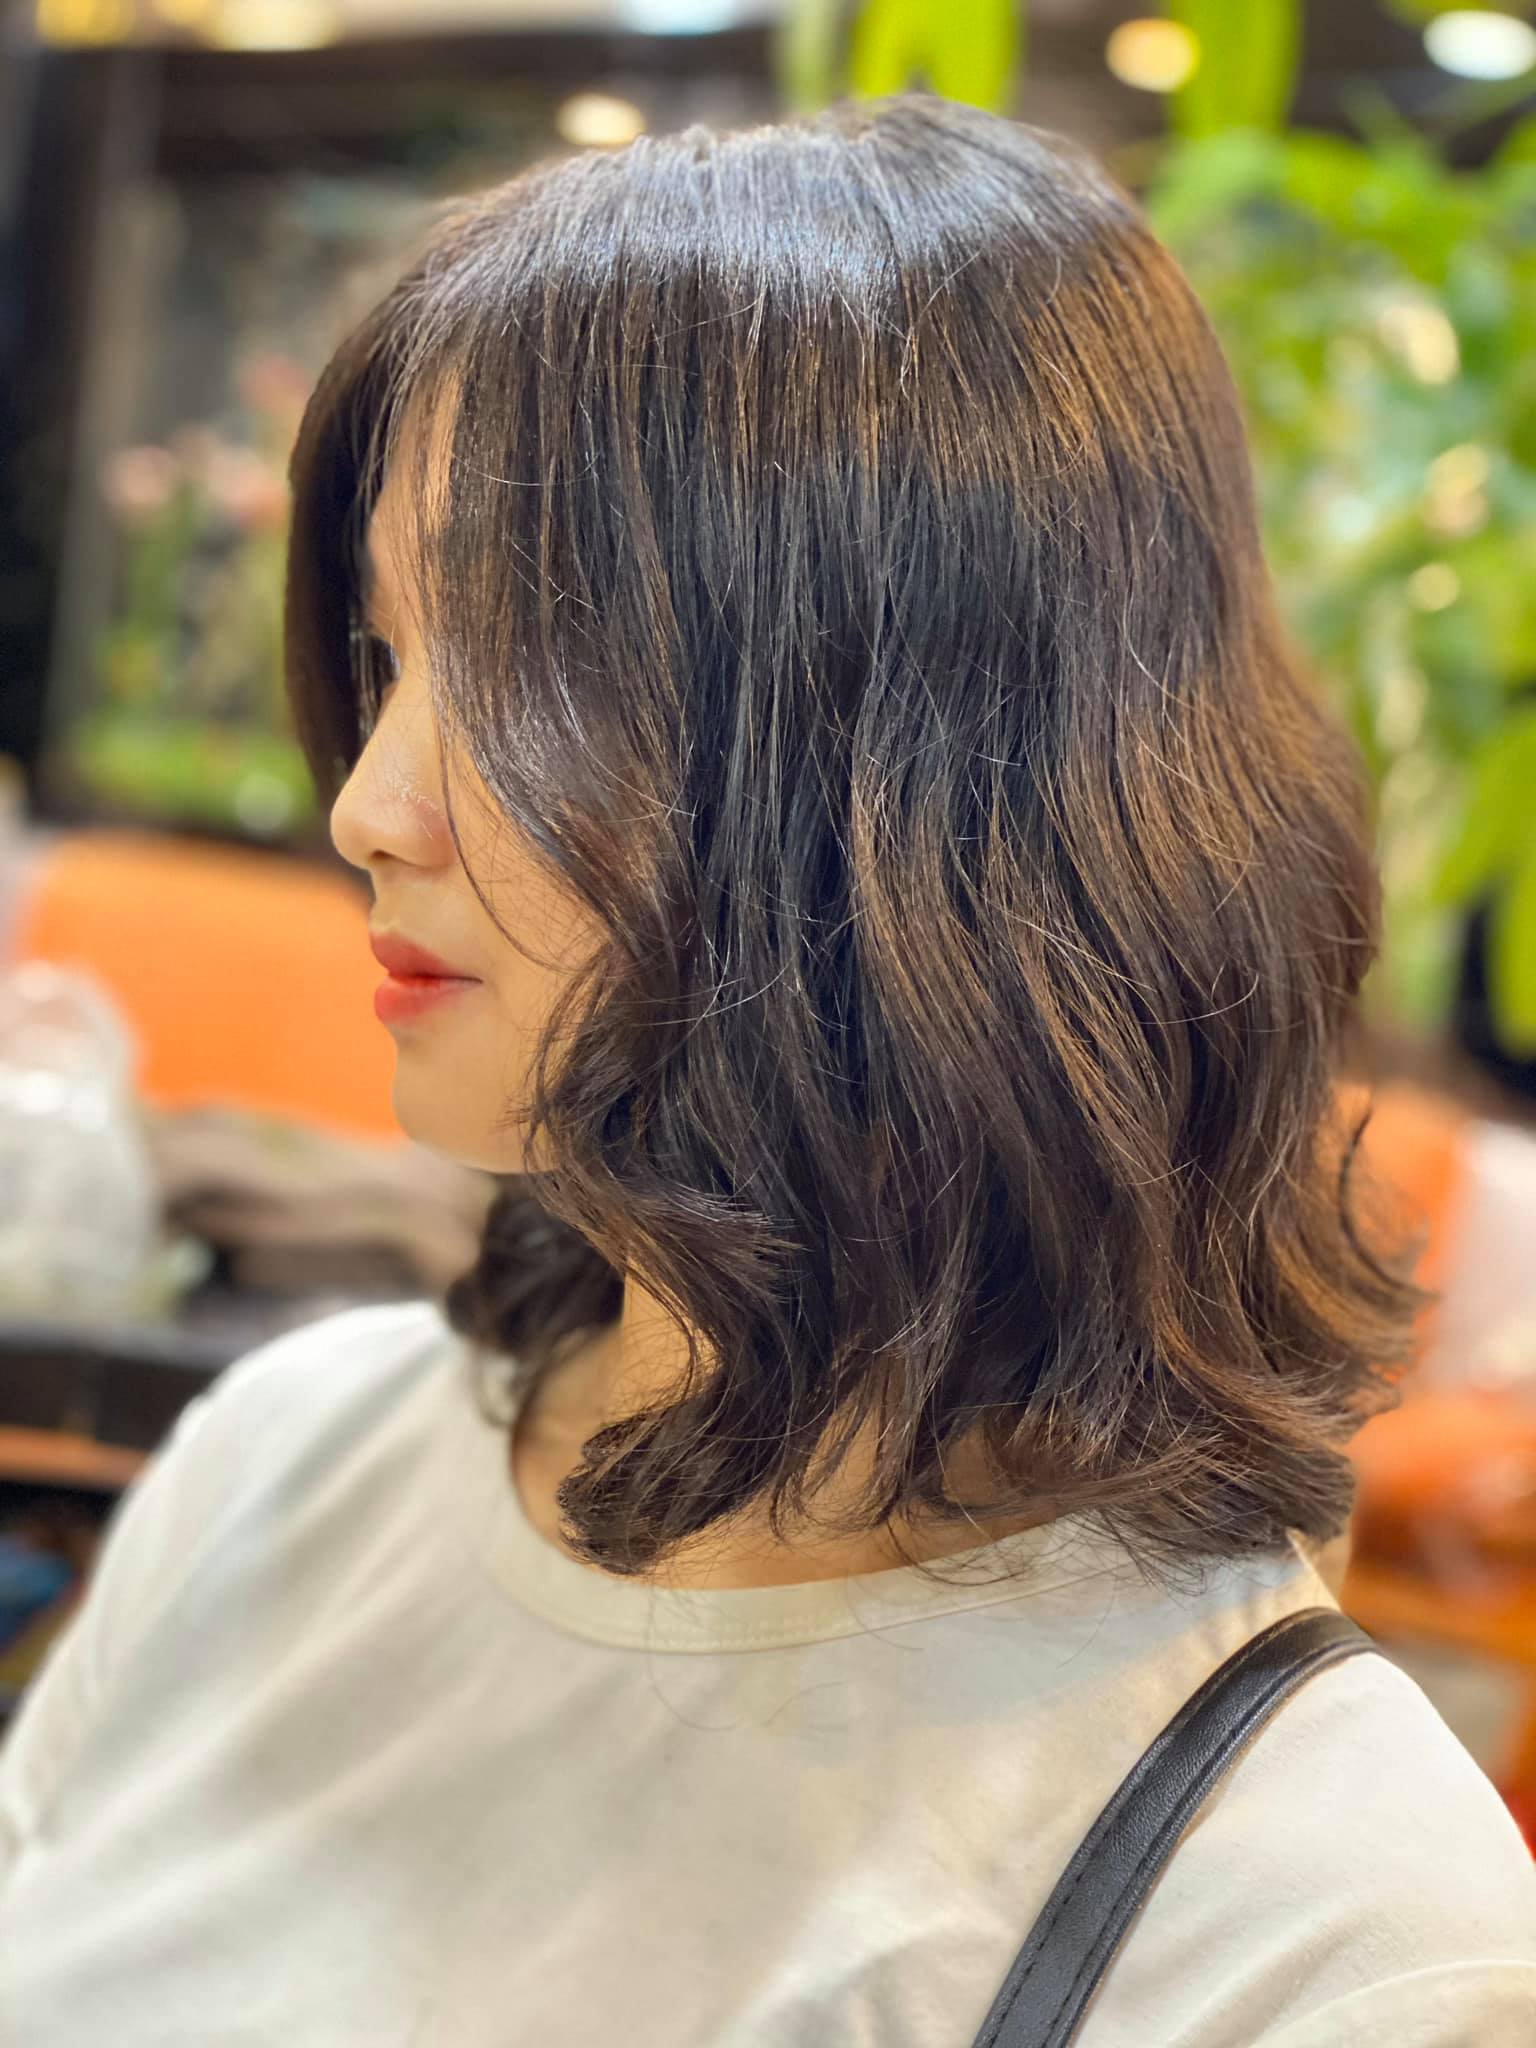 Nếu bạn muốn sở hữu một mái tóc uốn sóng xoắn đẹp như sao Hàn, hãy cùng chúng tôi khám phá bí quyết tạo kiểu tóc này. Đảm bảo bạn sẽ thích mê ngay từ cái nhìn đầu tiên.